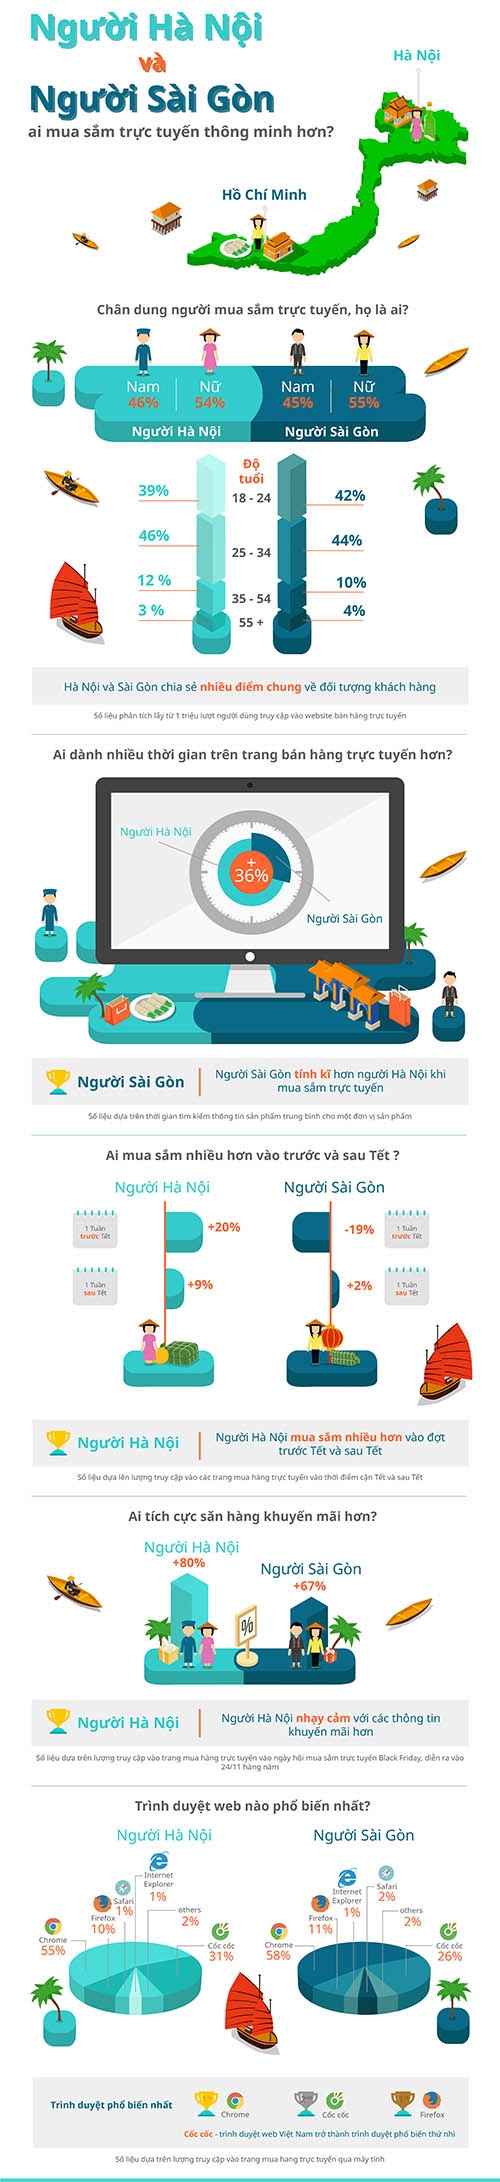 [Infographic] Sự khác biệt giữa người HN và TP.HCM khi mua hàng online